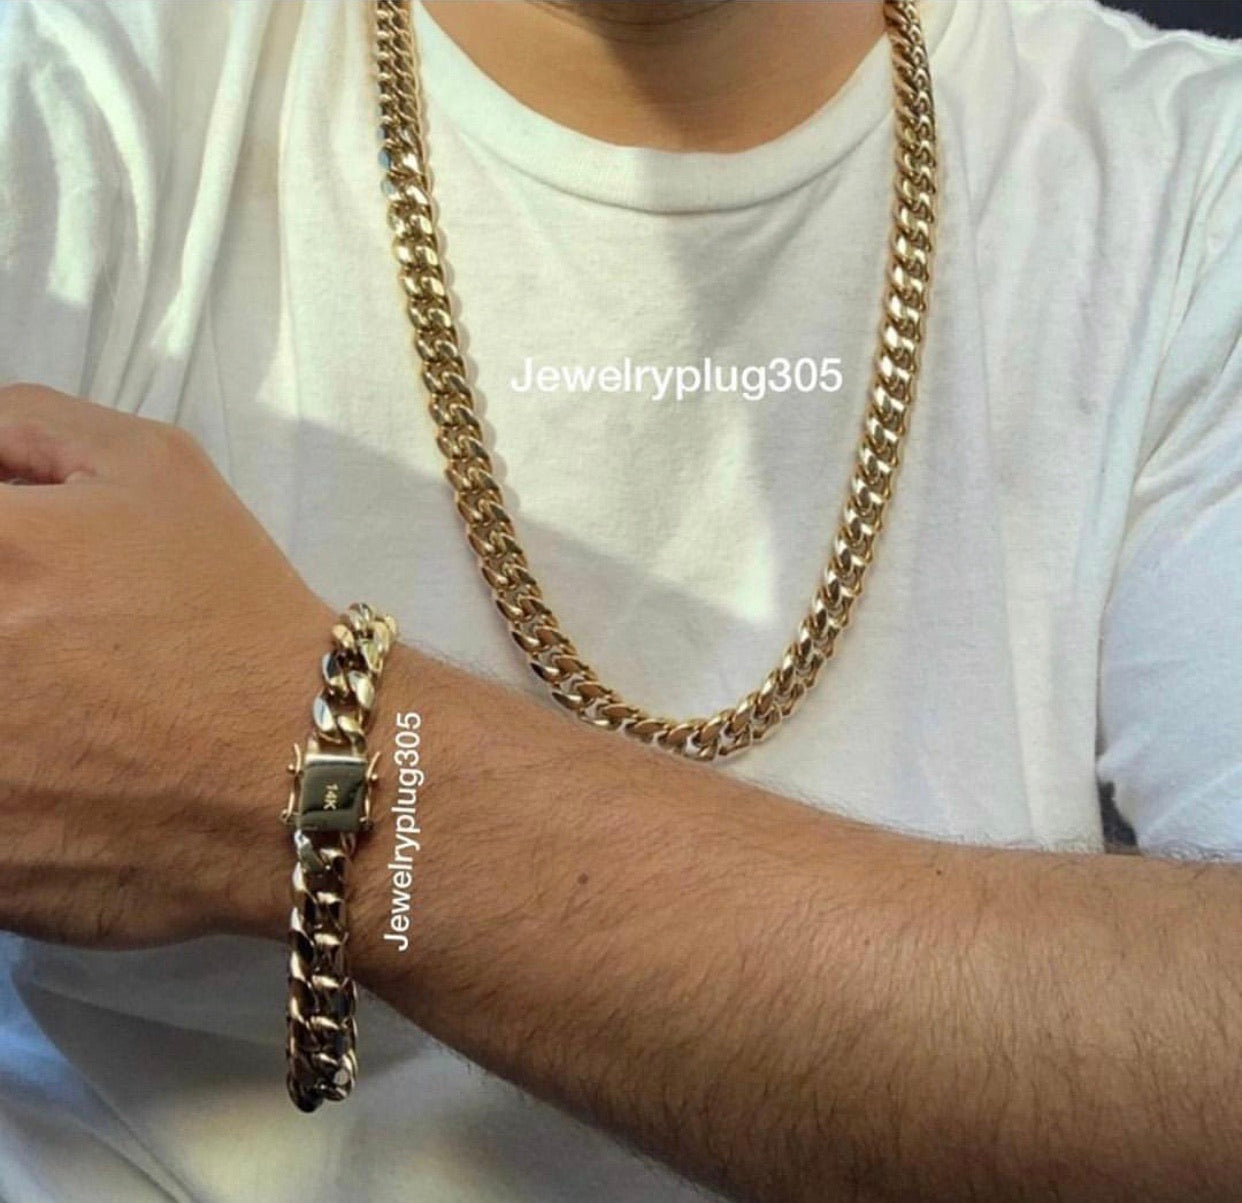 Necklace and bracelet set plus charm